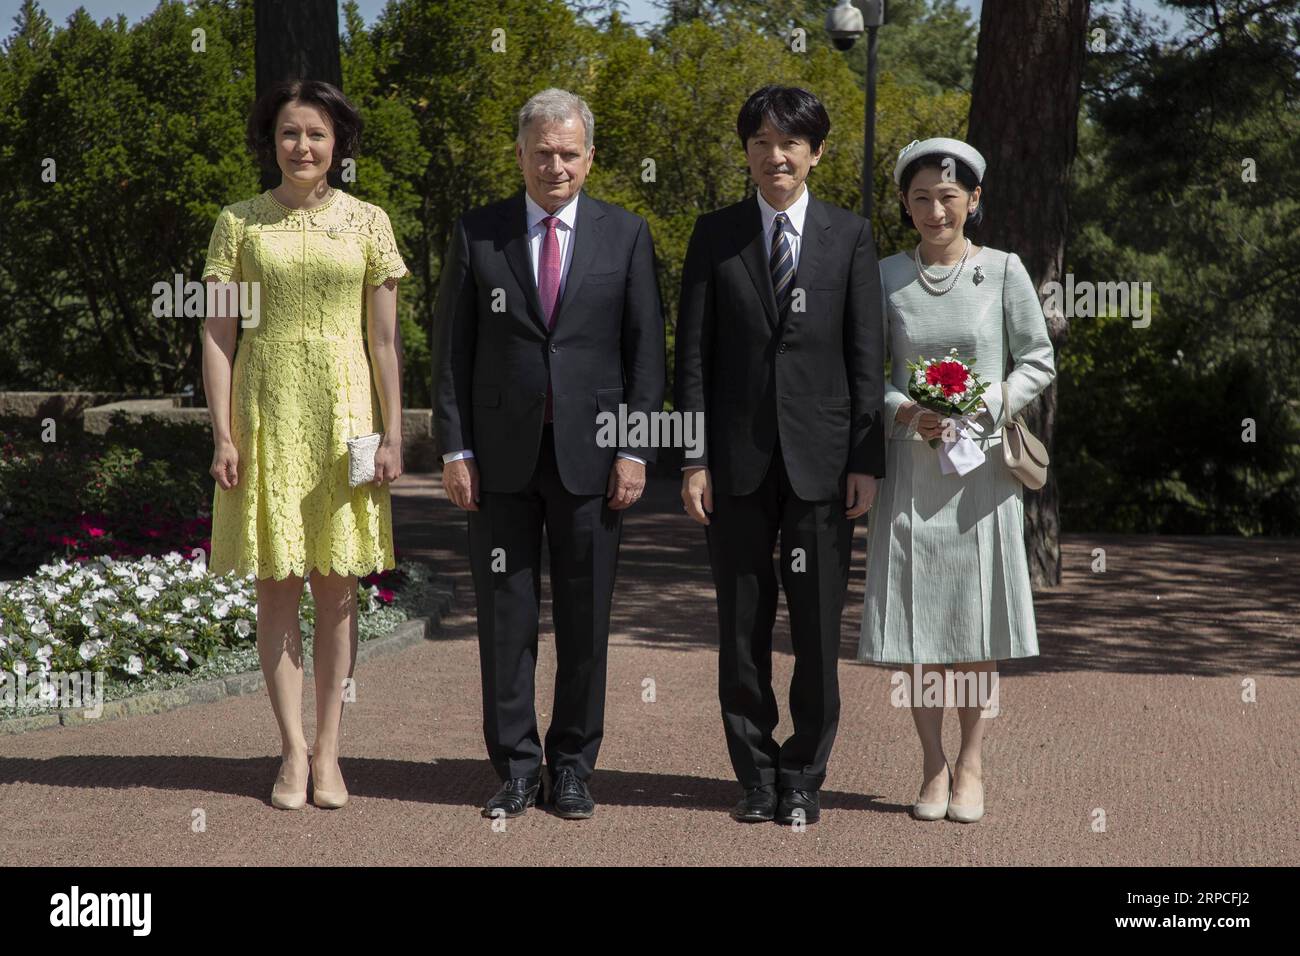 (190703) -- NAANTALI (FINLANDIA), 3 luglio 2019 (Xinhua) -- il presidente finlandese Sauli Niinisto (2nd L), sua moglie Jenni Haukio (1st L), il principe giapponese Akishino (2nd R) e la principessa Kiko (1st R) posano per le foto durante la cerimonia di benvenuto al castello di Kultaranta a Naantali, Finlandia, il 3 luglio 2019. La visita del principe Akishino segna il 100° anniversario delle relazioni diplomatiche tra Finlandia e Giappone. (Xinhua/Matti Matikainen) FINLANDIA-NAANTALI-GIAPPONE-PRINCE-VISIT PUBLICATIONxNOTxINxCHN Foto Stock